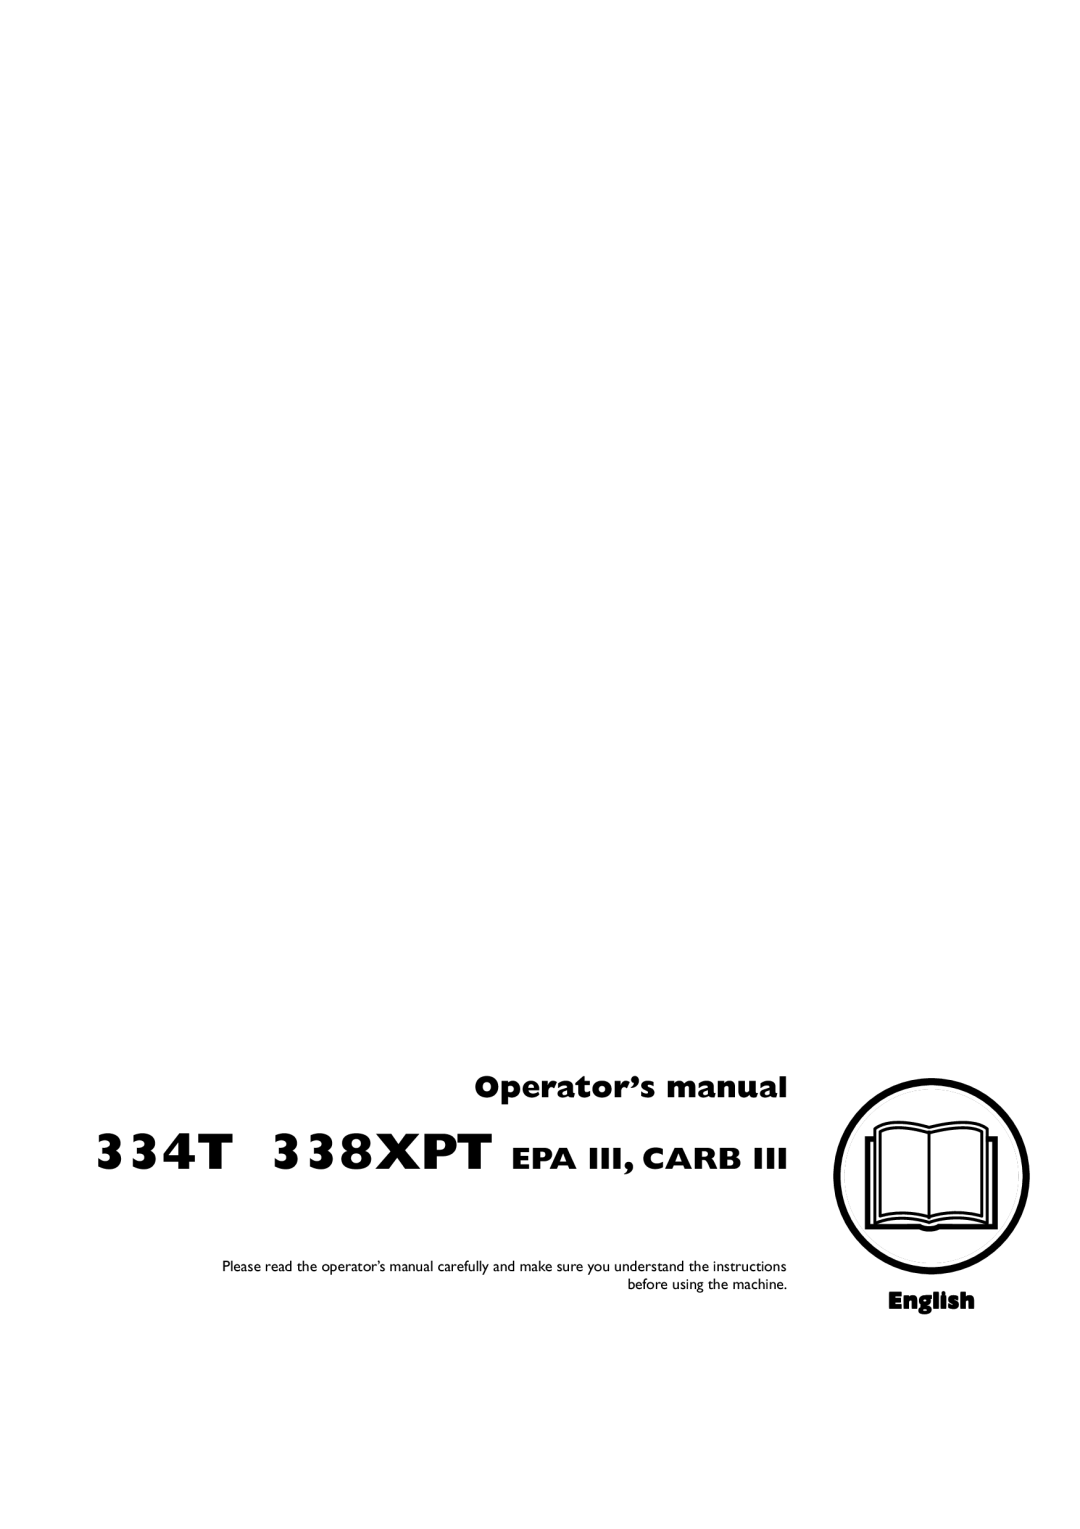 Husqvarna 1151375-95 manual Operator’s manual 334T 338XPT EPA III, CARB, English 